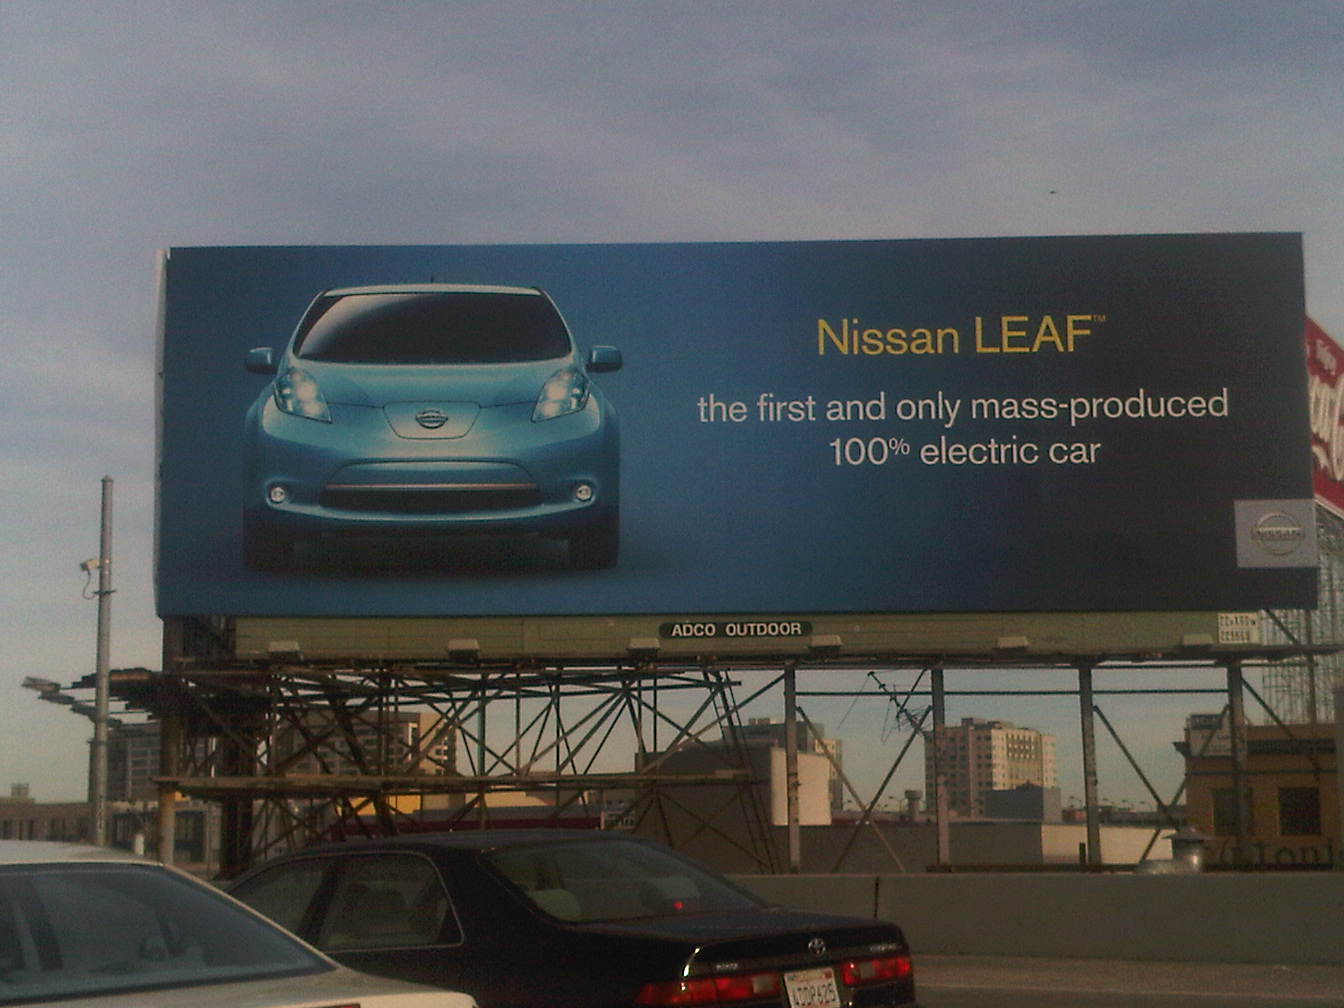 Nissan leaf magazine ad